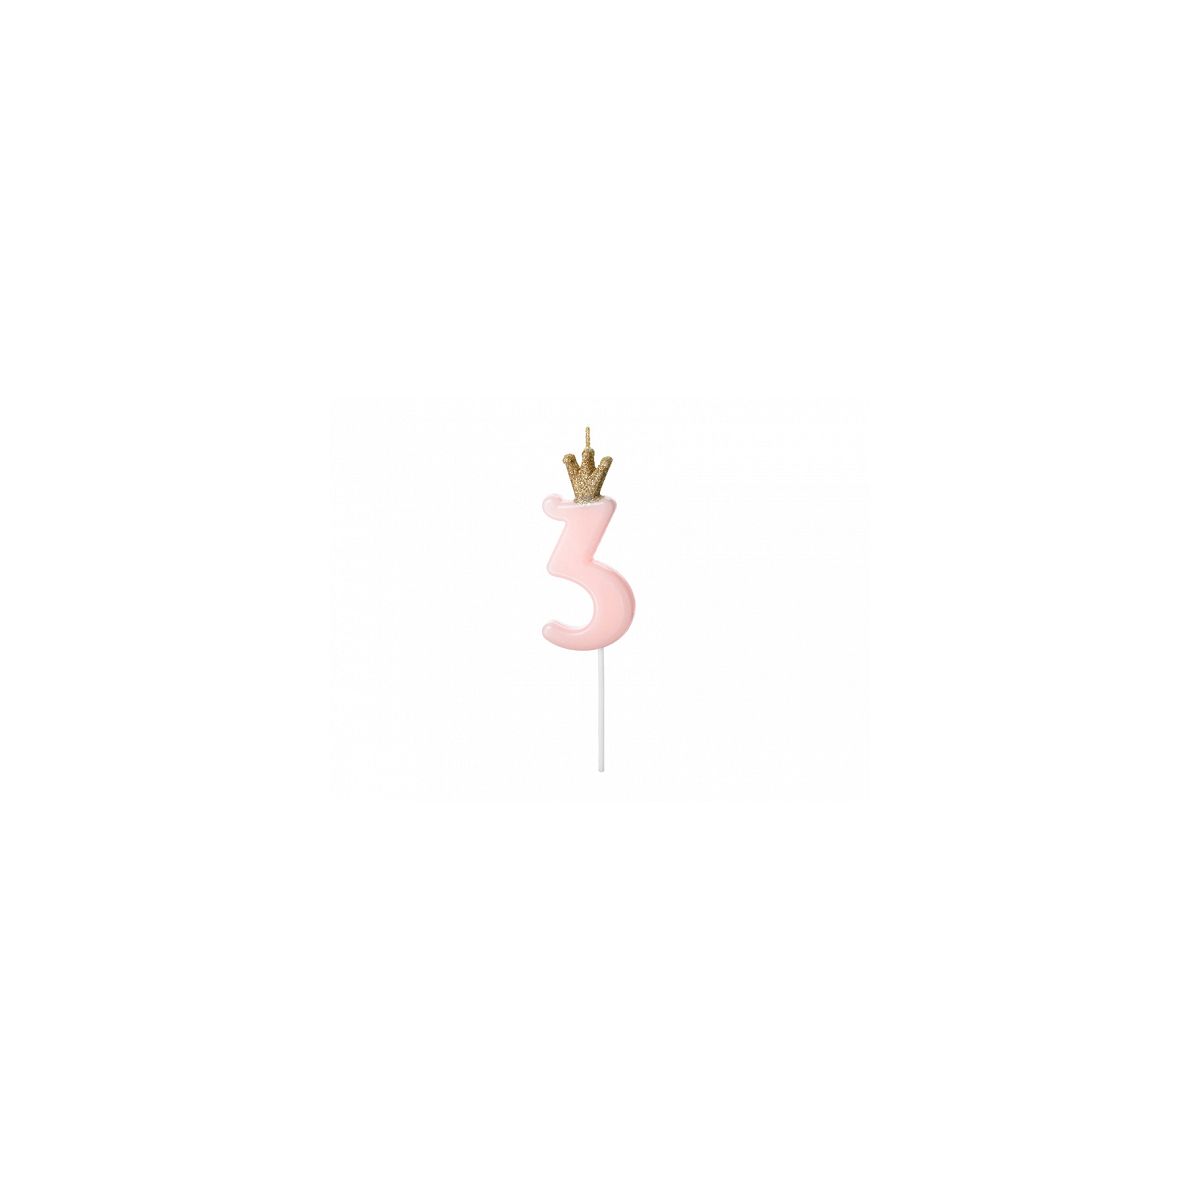 Świeczka urodzinowa Cyferka 3, jasny różowy, 9.5cm Partydeco (SCU6-3-081J)